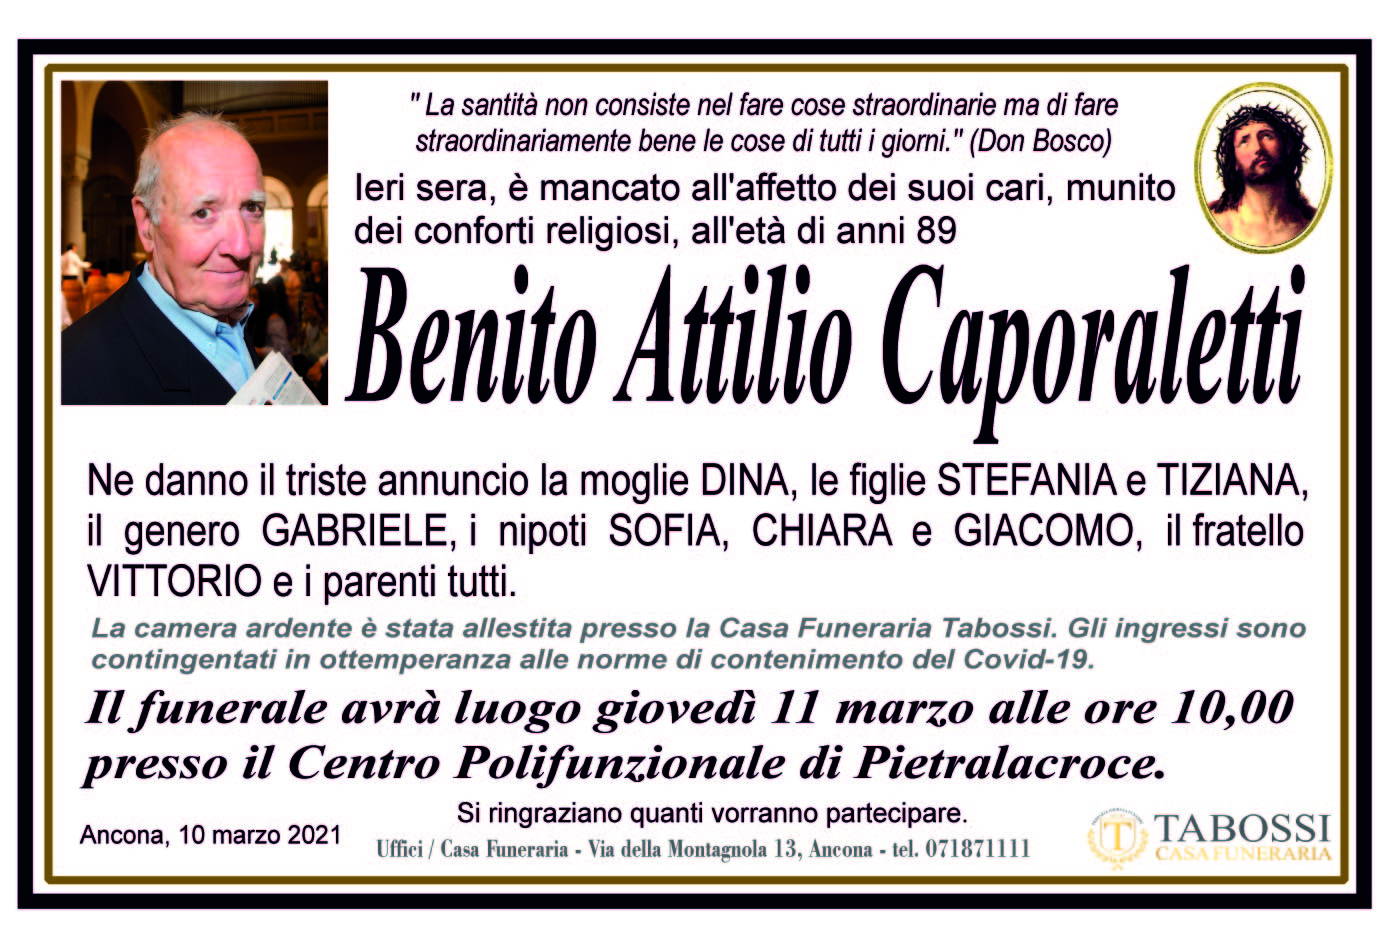 Benito Attilio Caporaletti